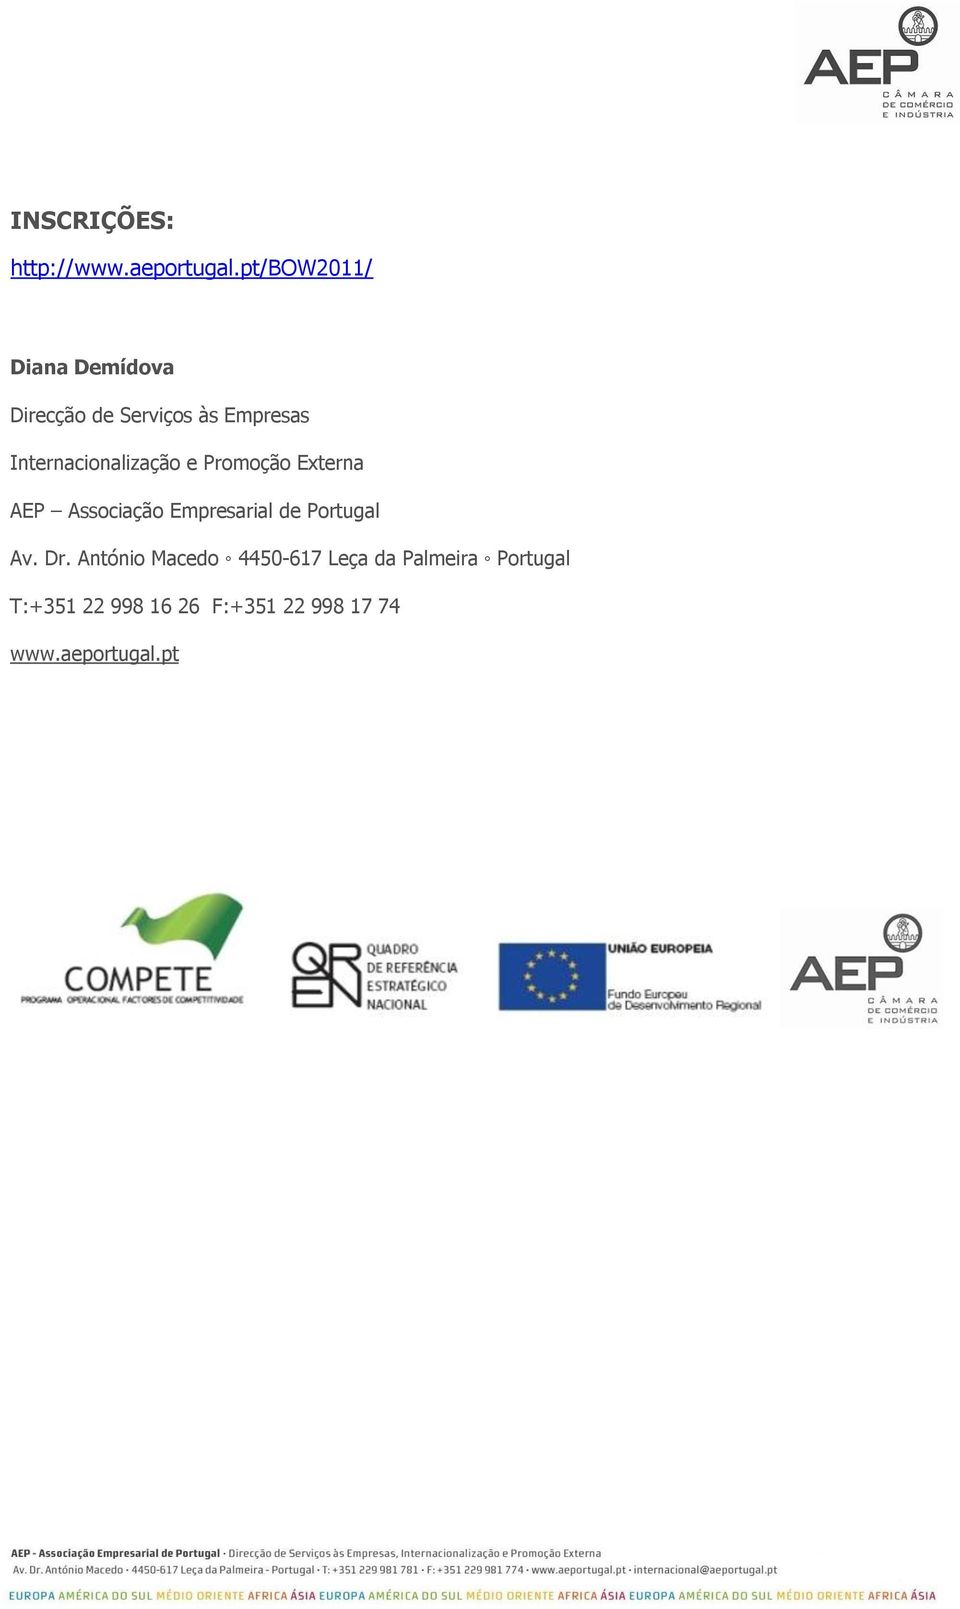 Internacionalização e Promoção Externa AEP Associação Empresarial de